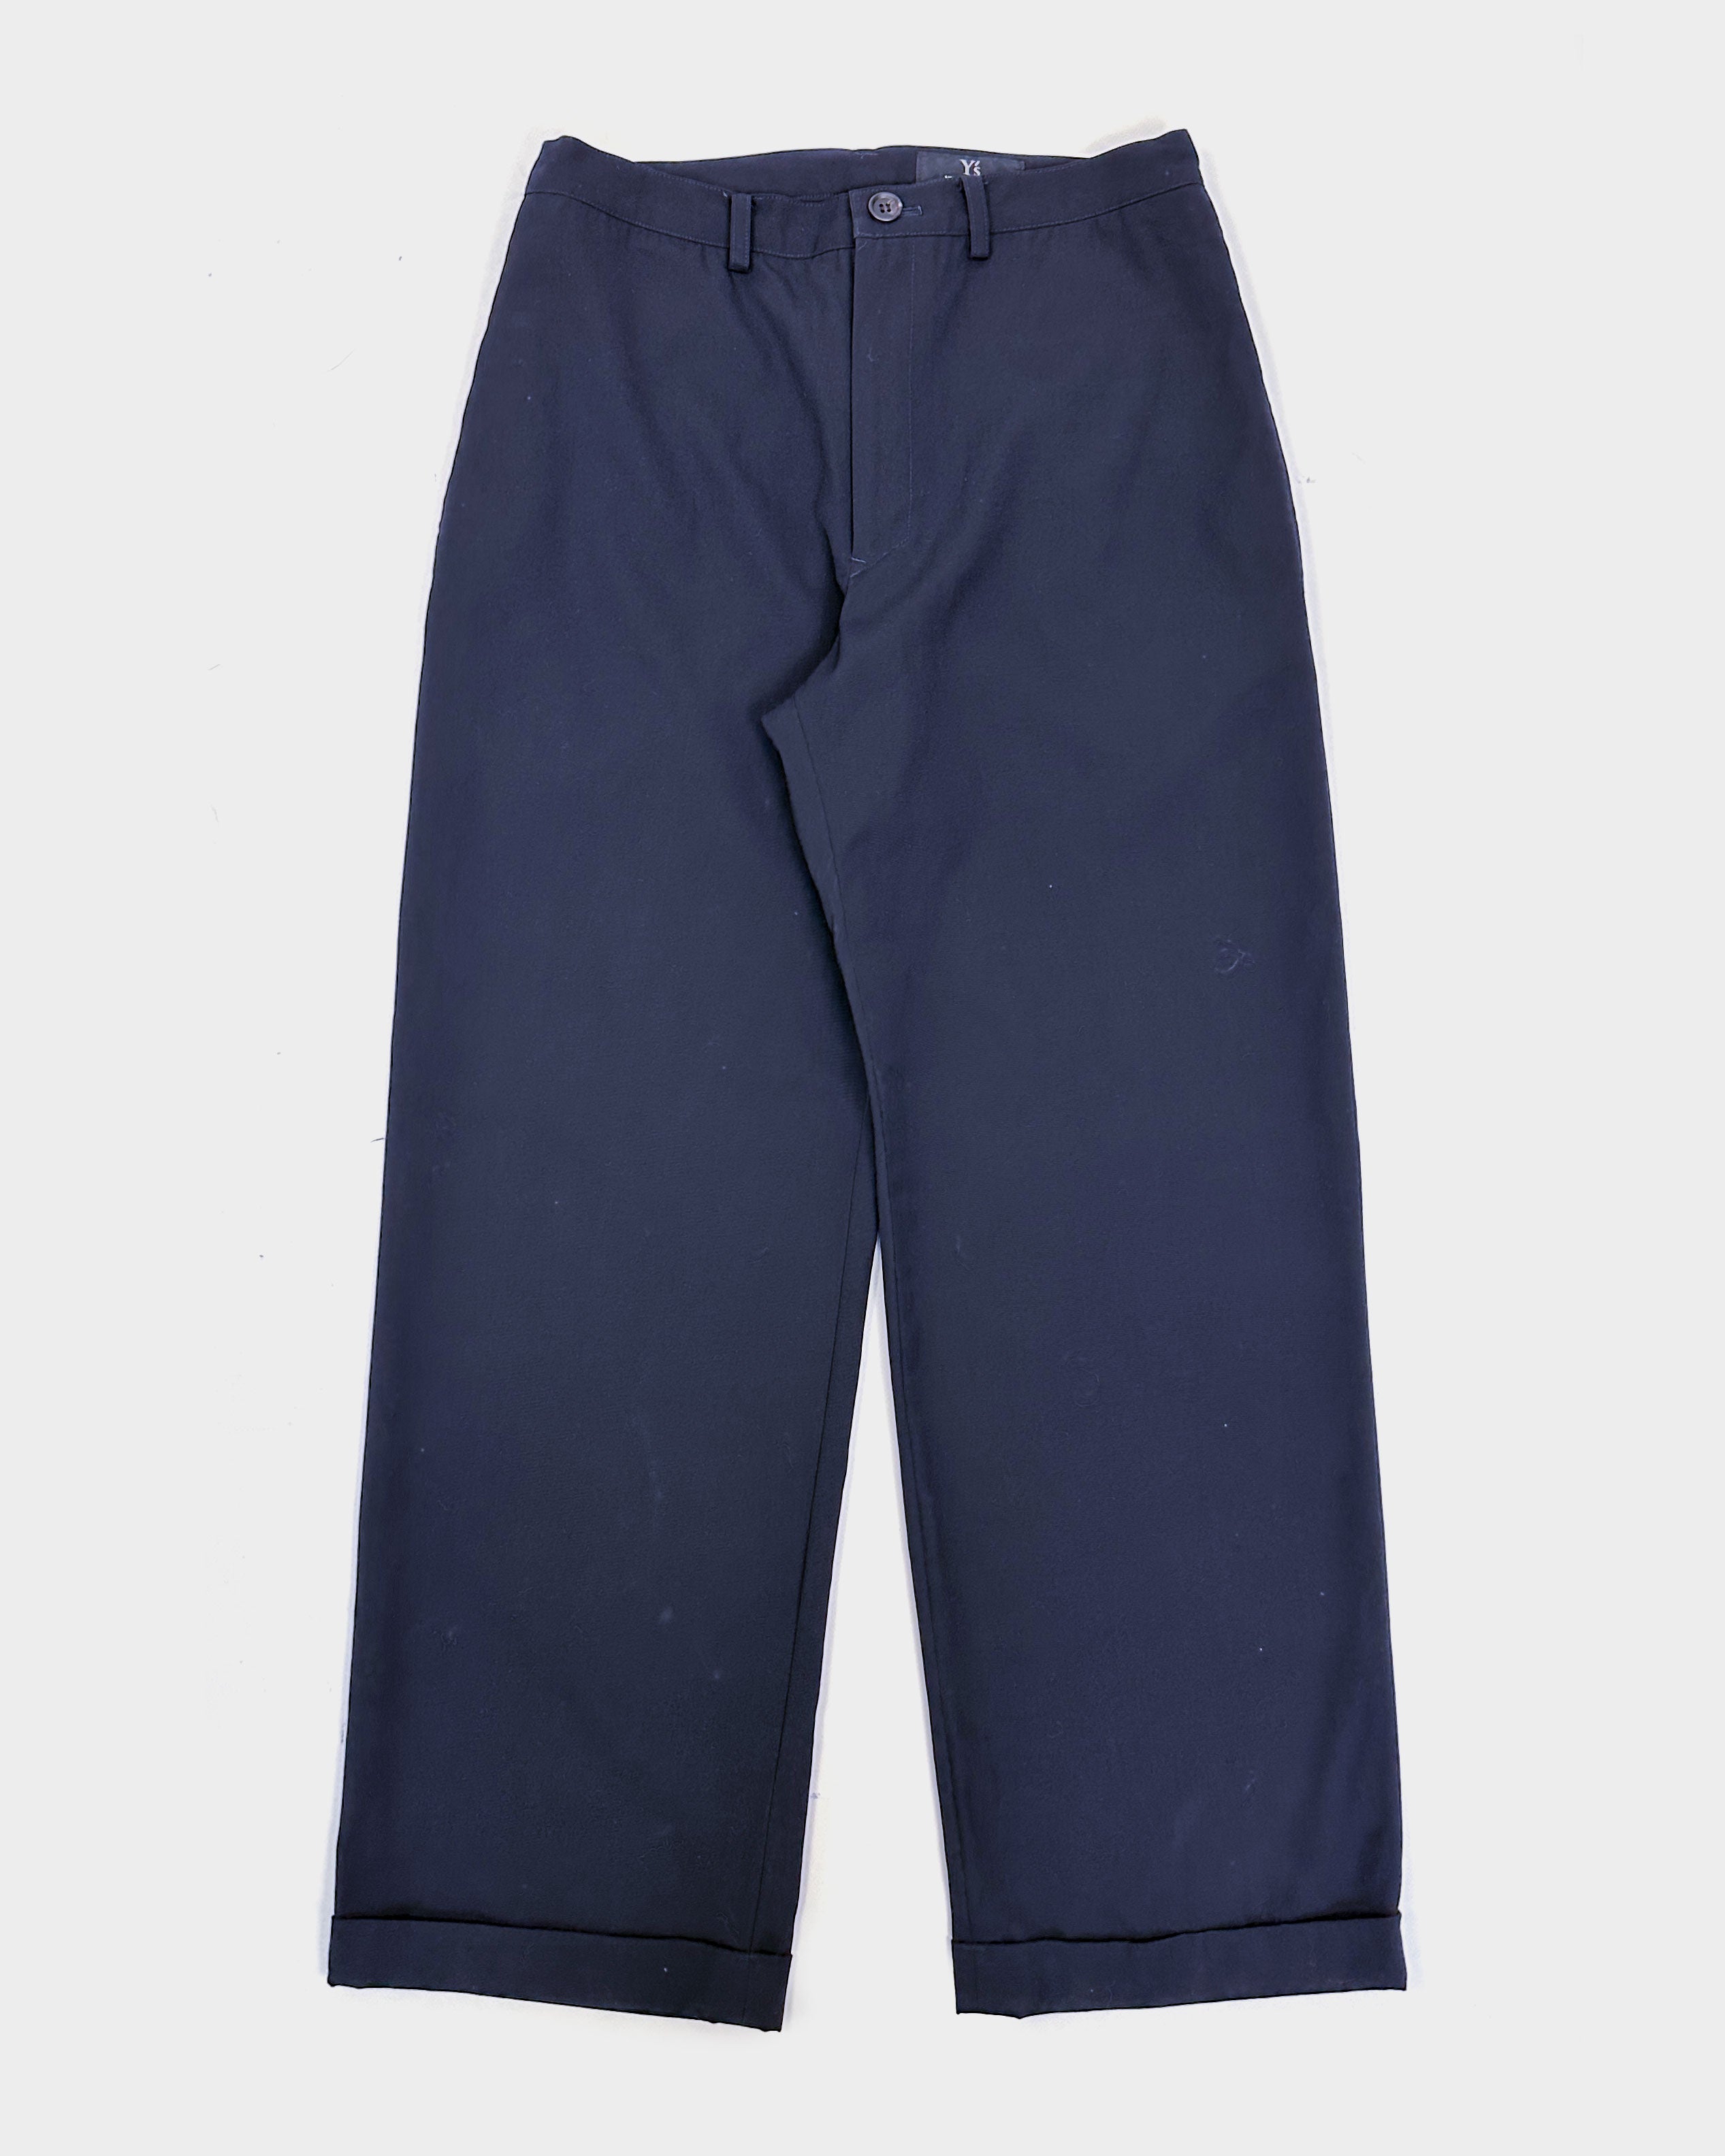 Yohji Yamamoto Wool Thin Navy Blue Pants 2008 – Vintage TTS